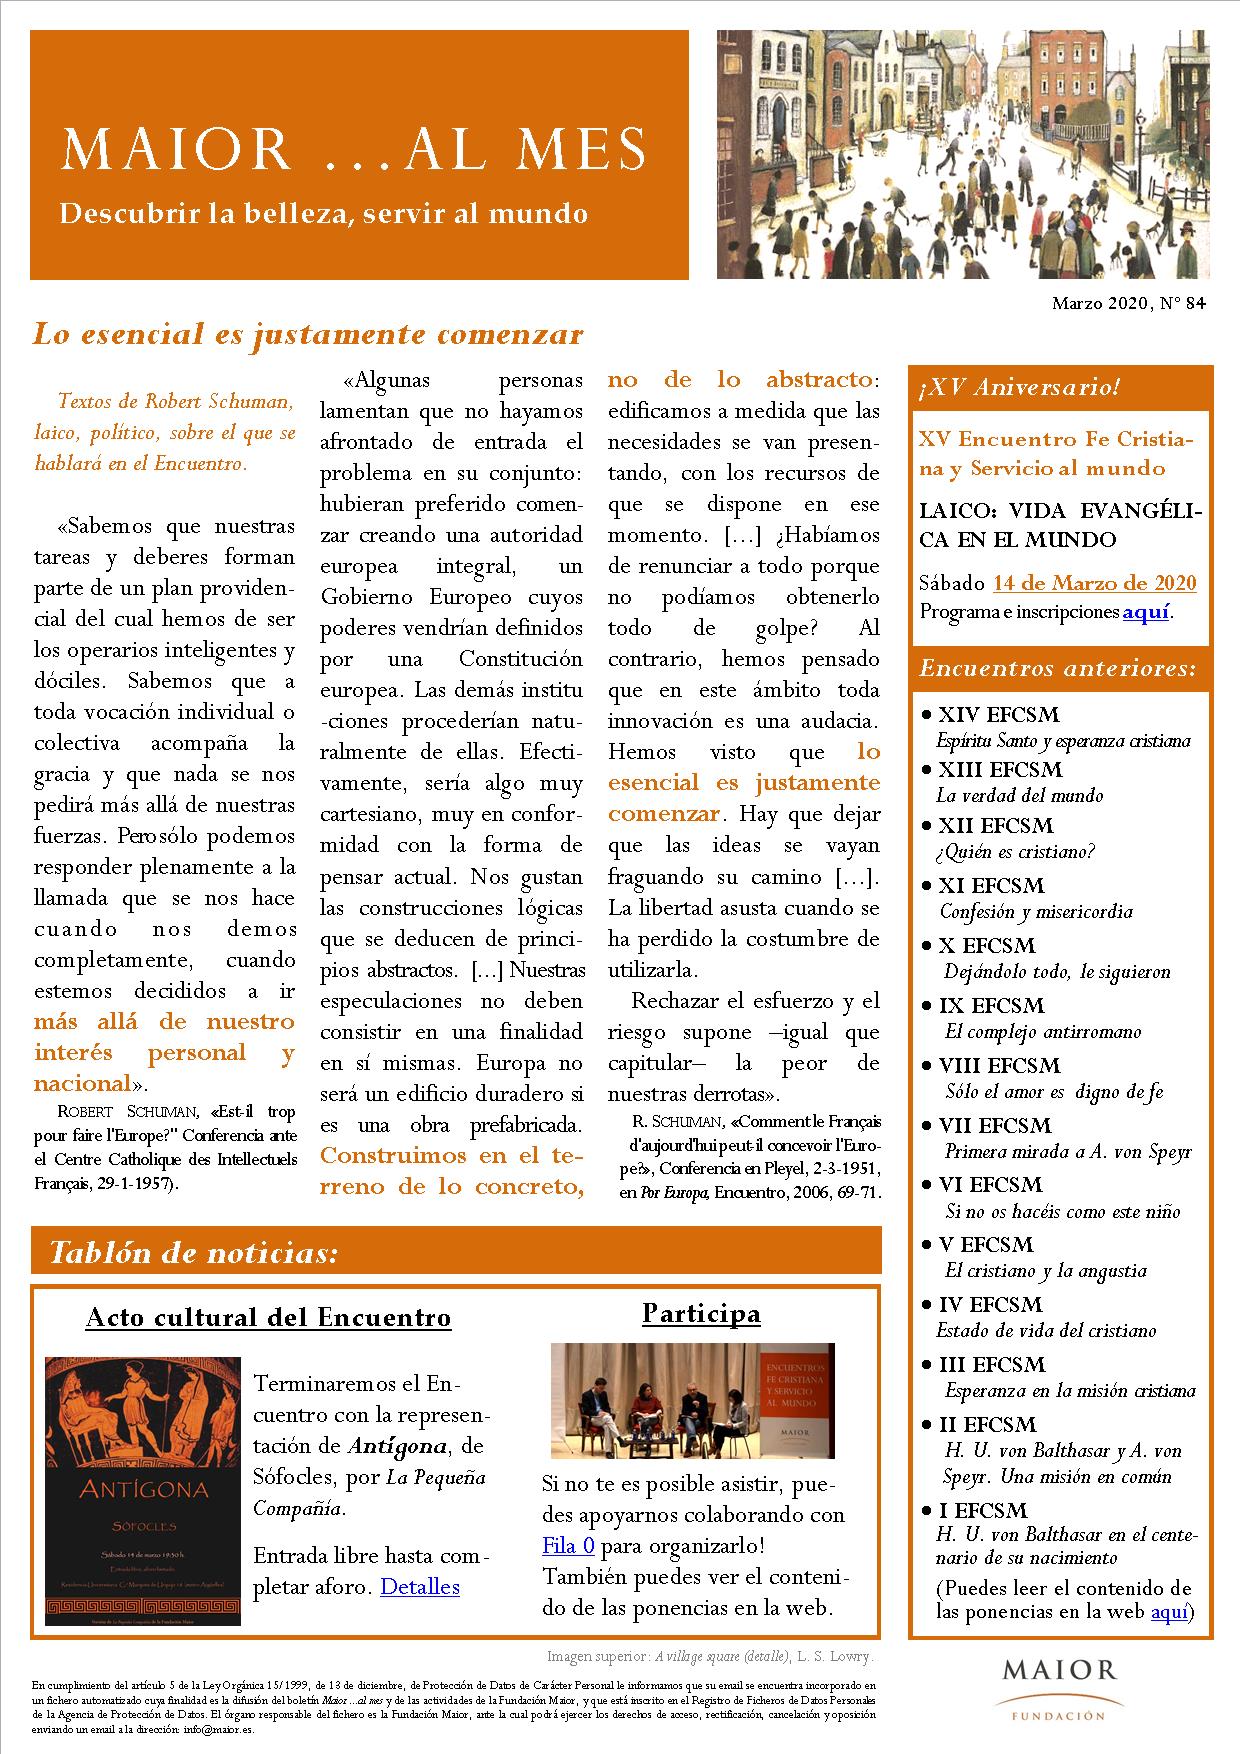 Boletín mensual de noticias y actividades de la Fundación Maior. Edición de marzo 2020